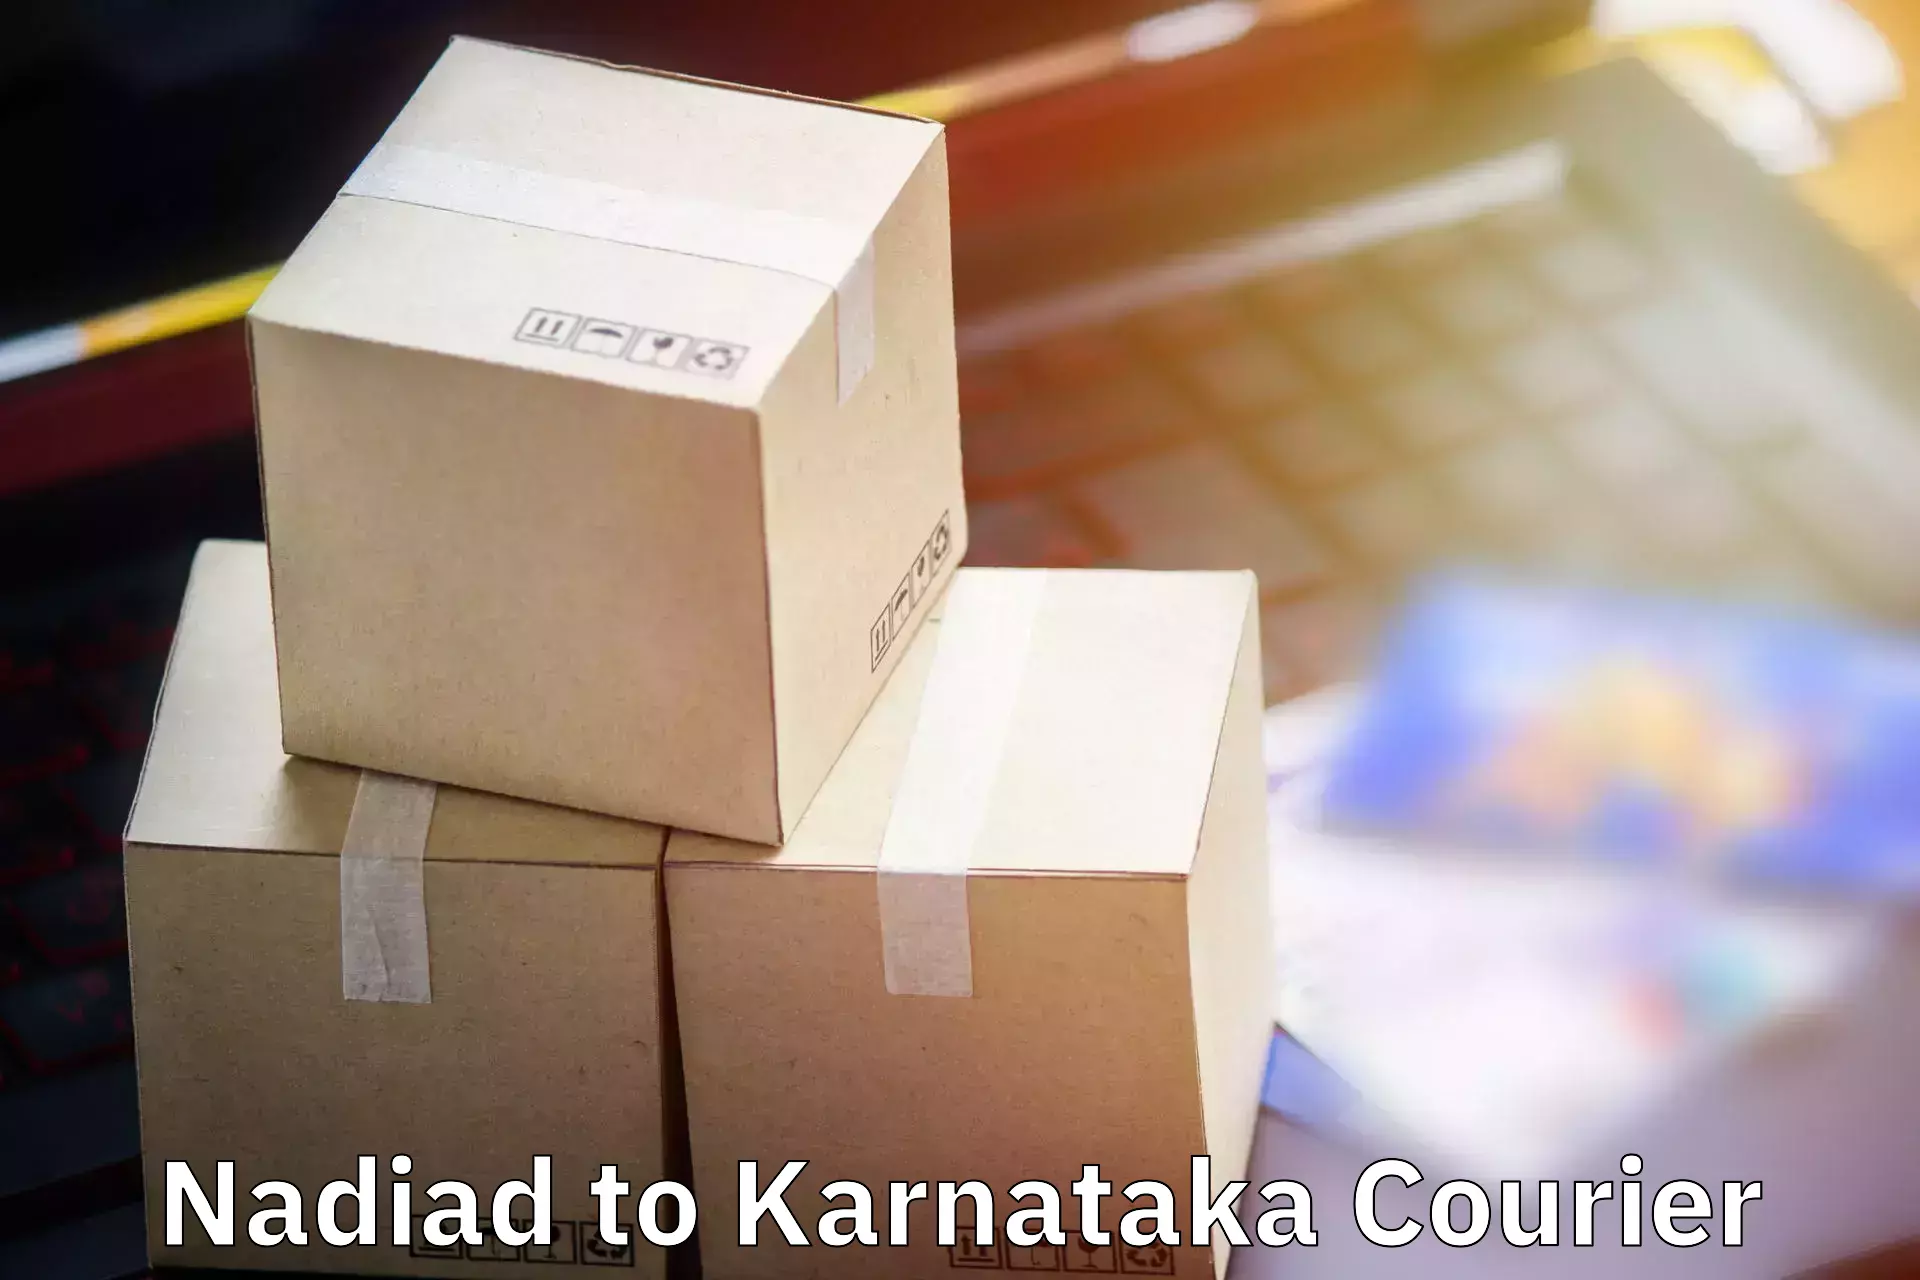 Baggage shipping optimization Nadiad to Kanjarakatte